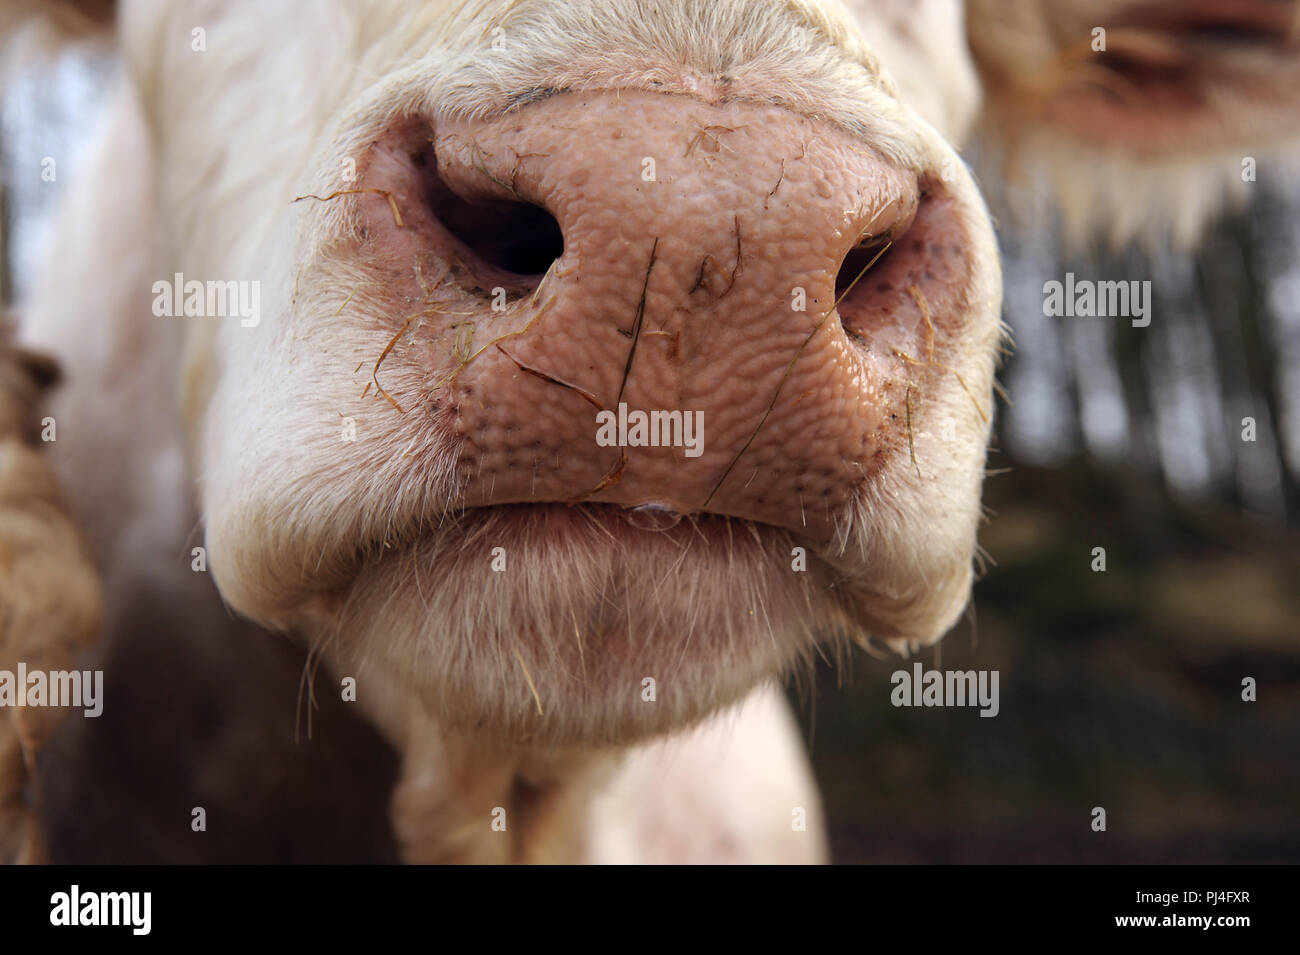 Nahaufnahme der nassen Nase der charolais-Färse Stockfoto